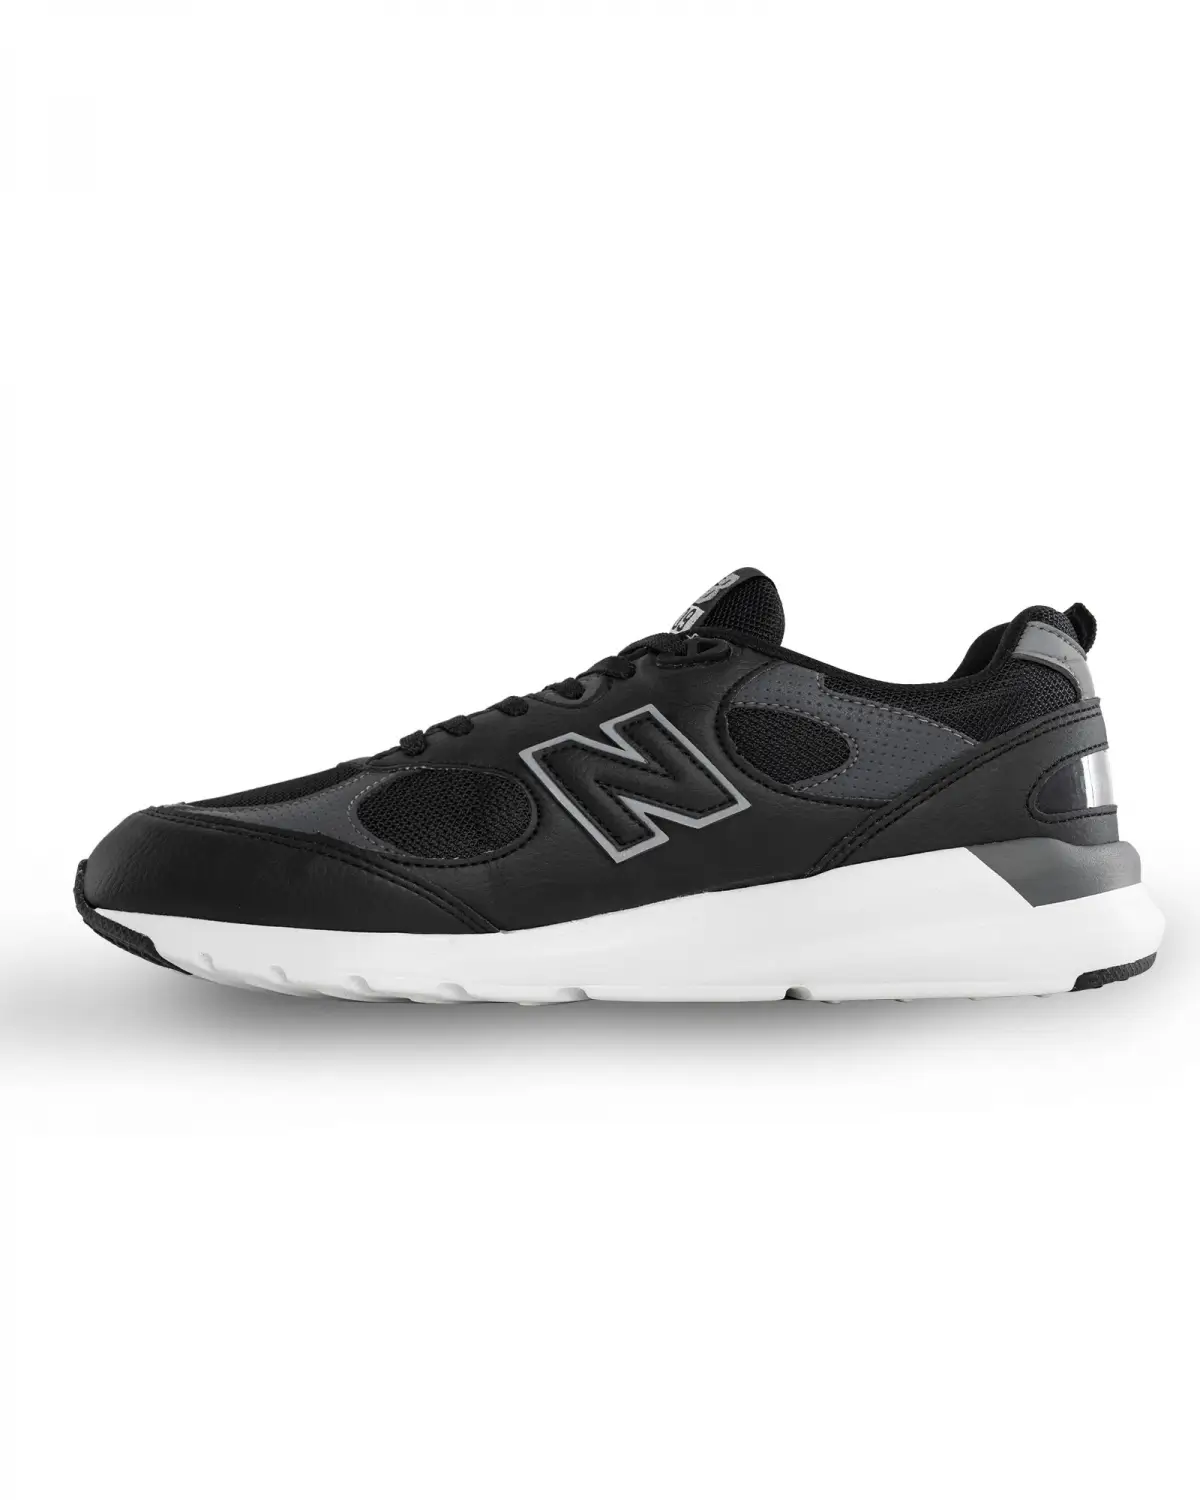 New Balance Lifestyle Siyah Erkek Günlük Ayakkabı  - MS109CBK